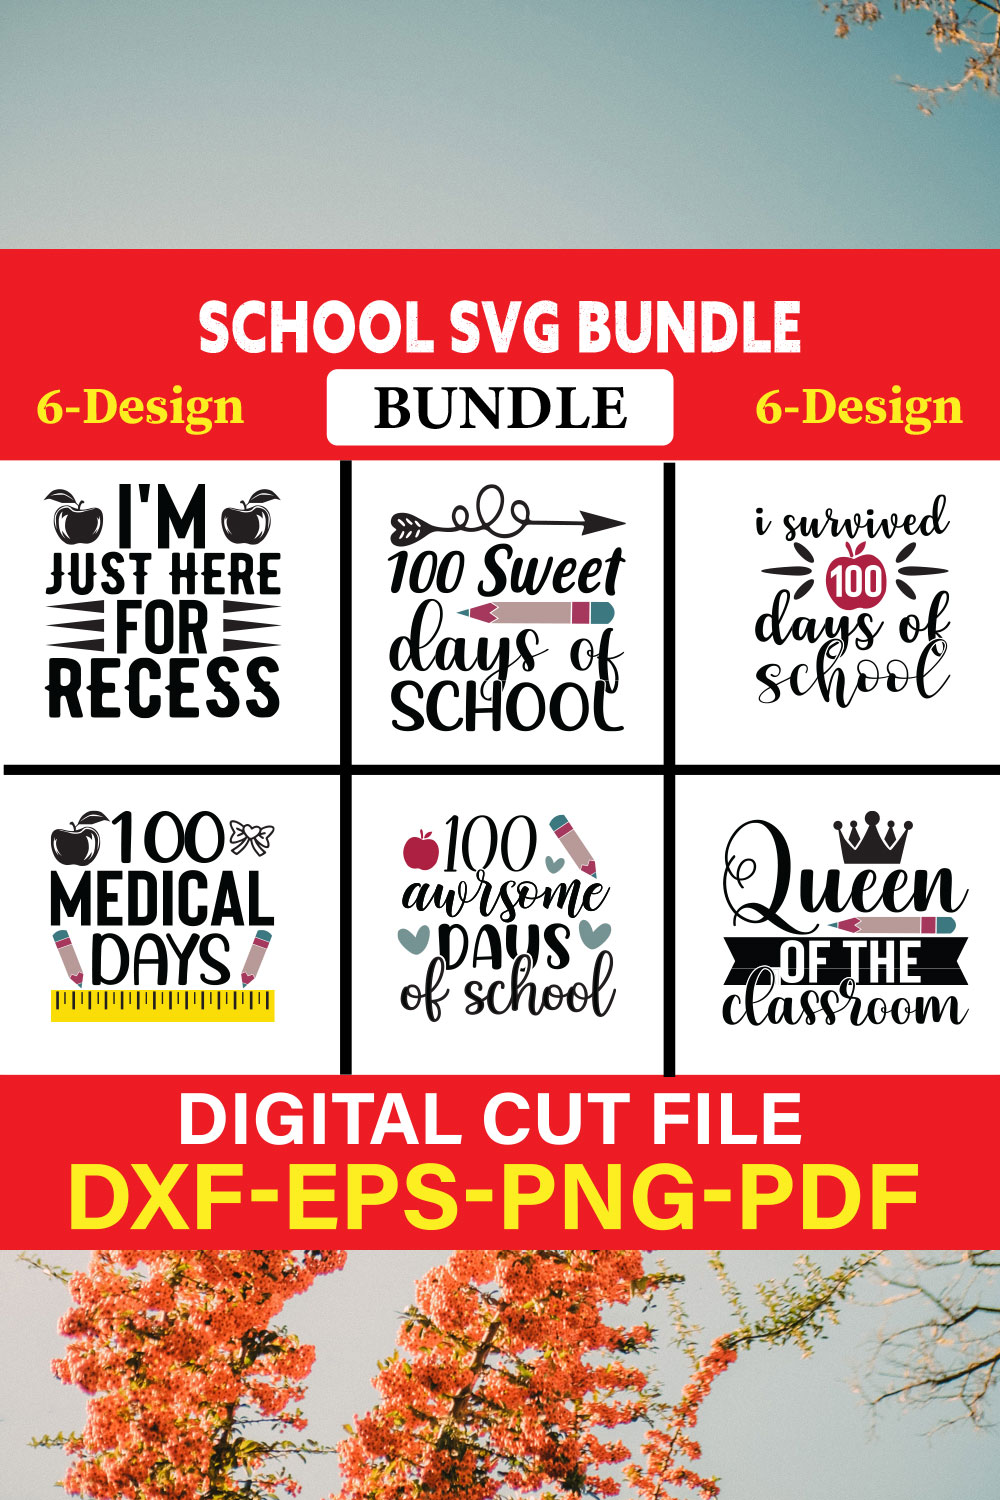 School svg bundle T-shirt Design Bundle Vol-7 pinterest preview image.